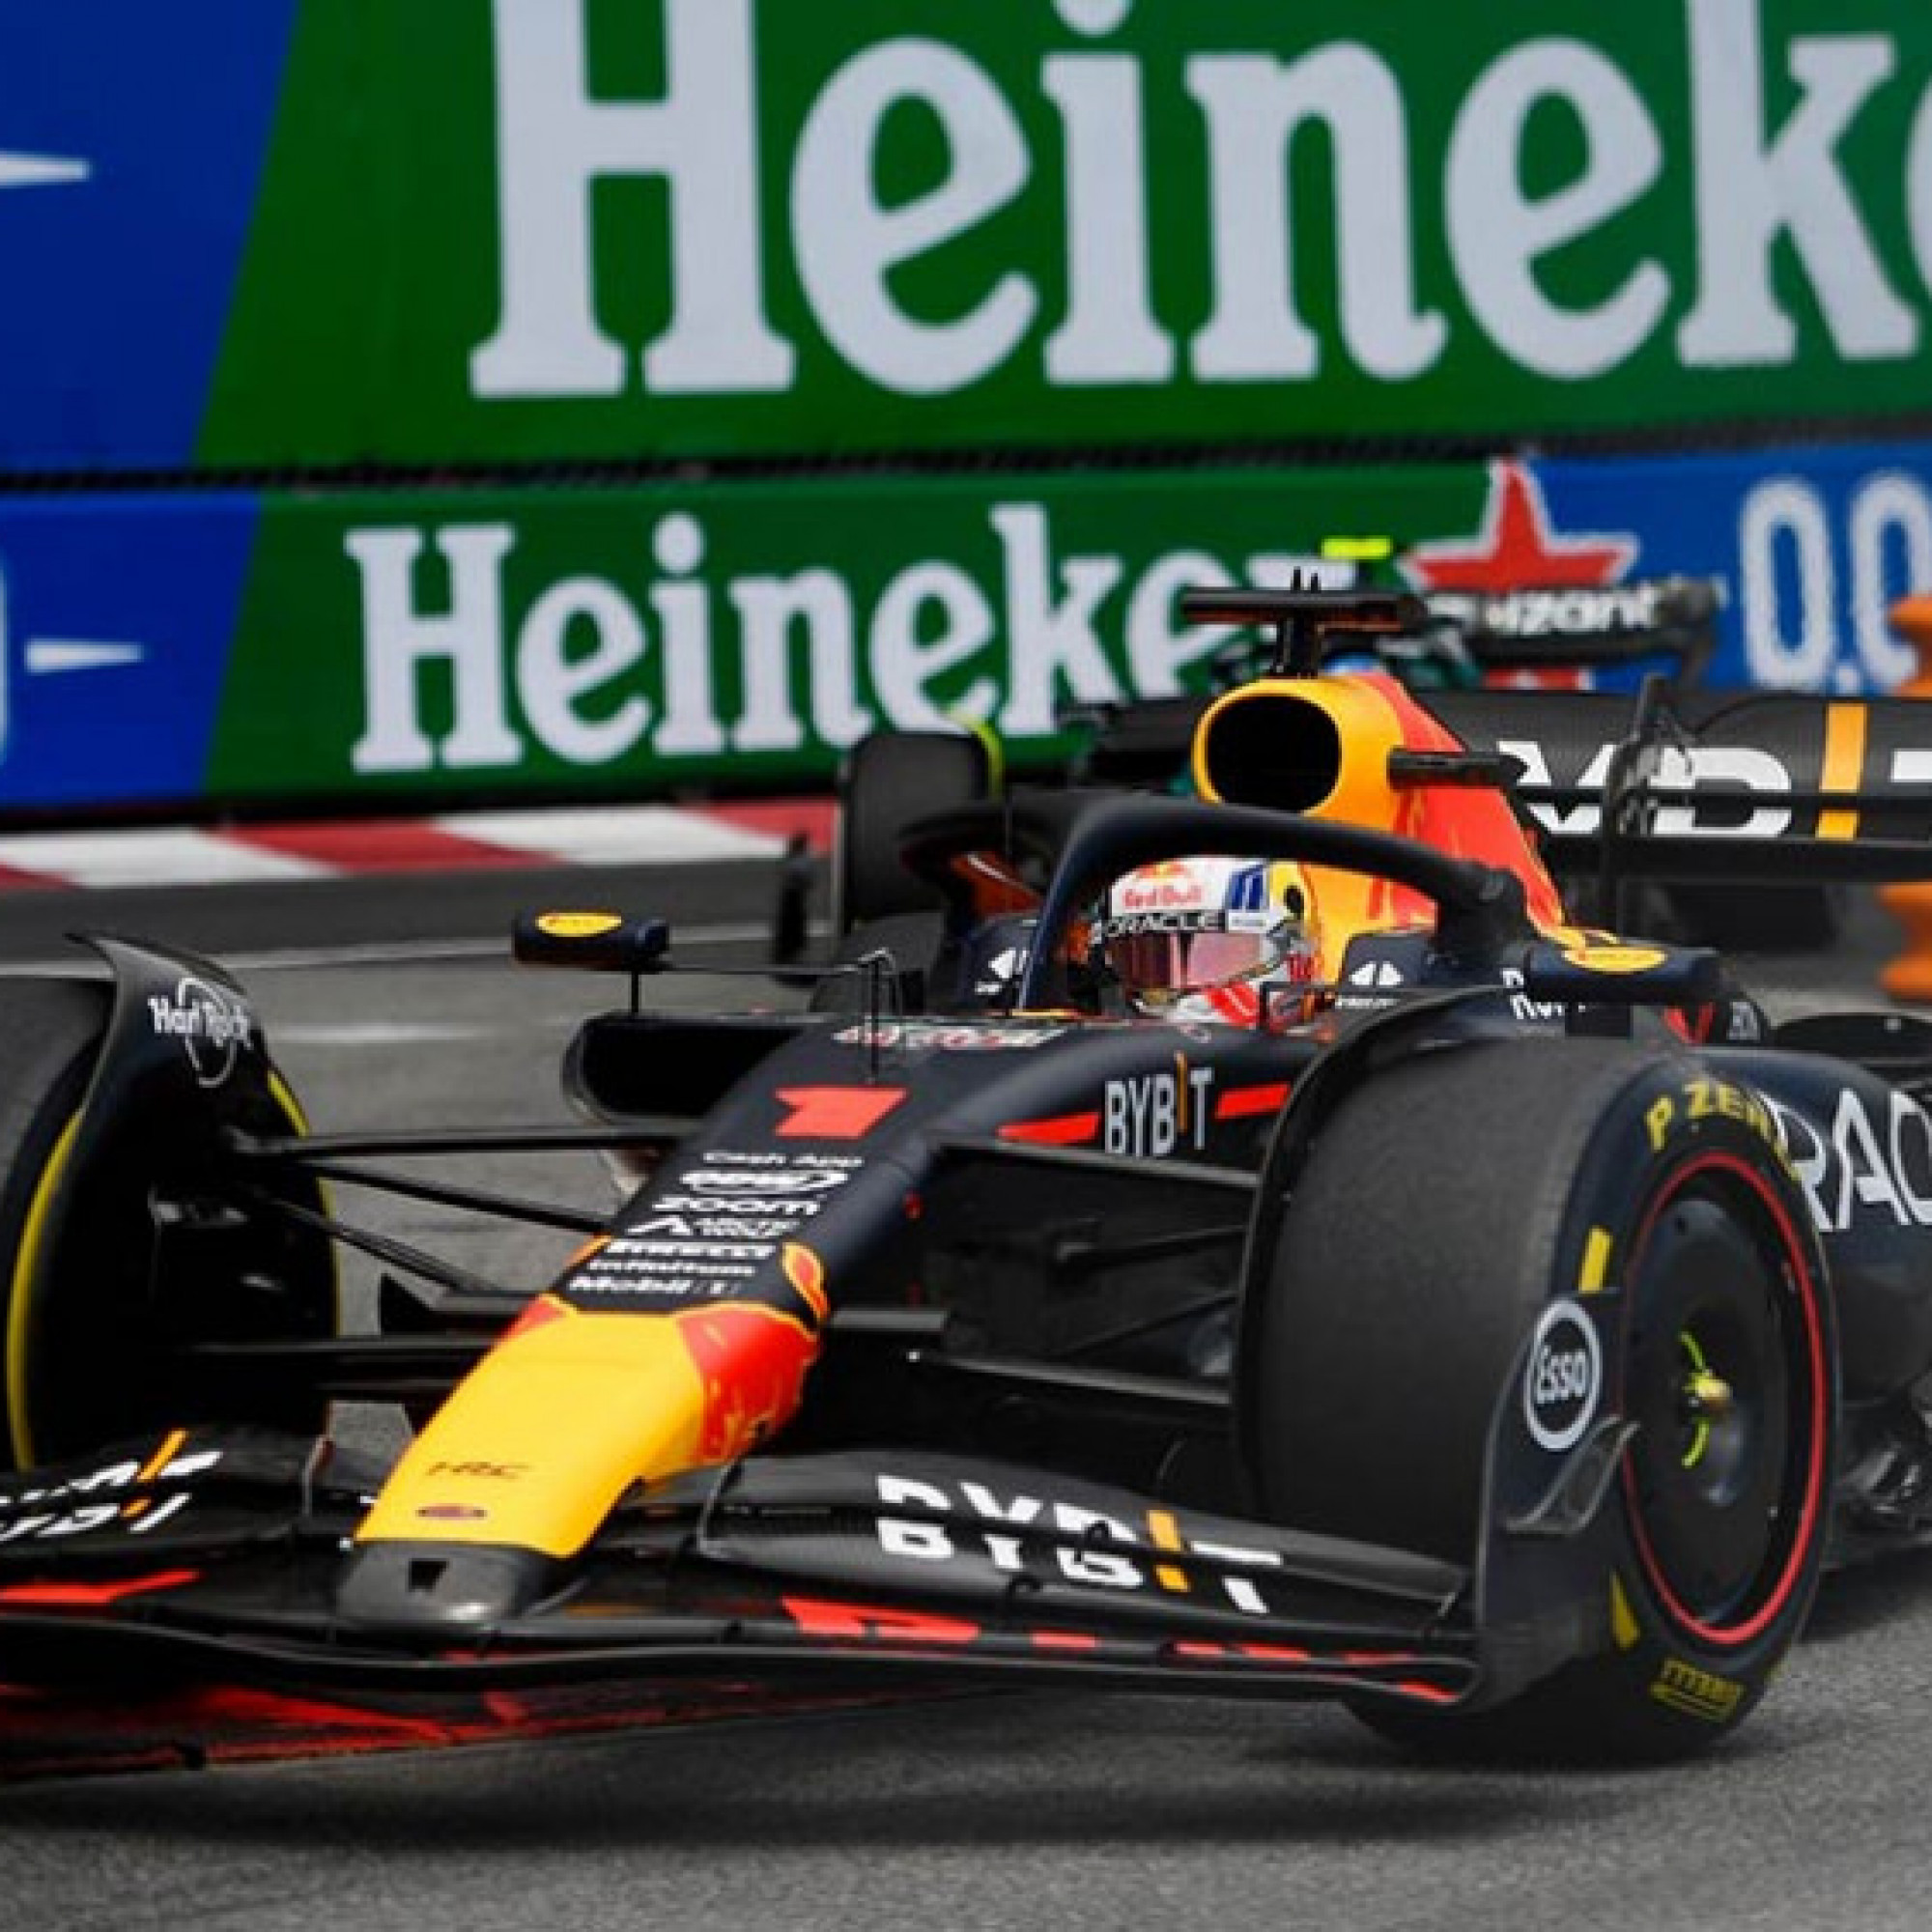  - Đua xe F1, Monaco GP: Verstappen kéo dài chuỗi thắng của Red Bull